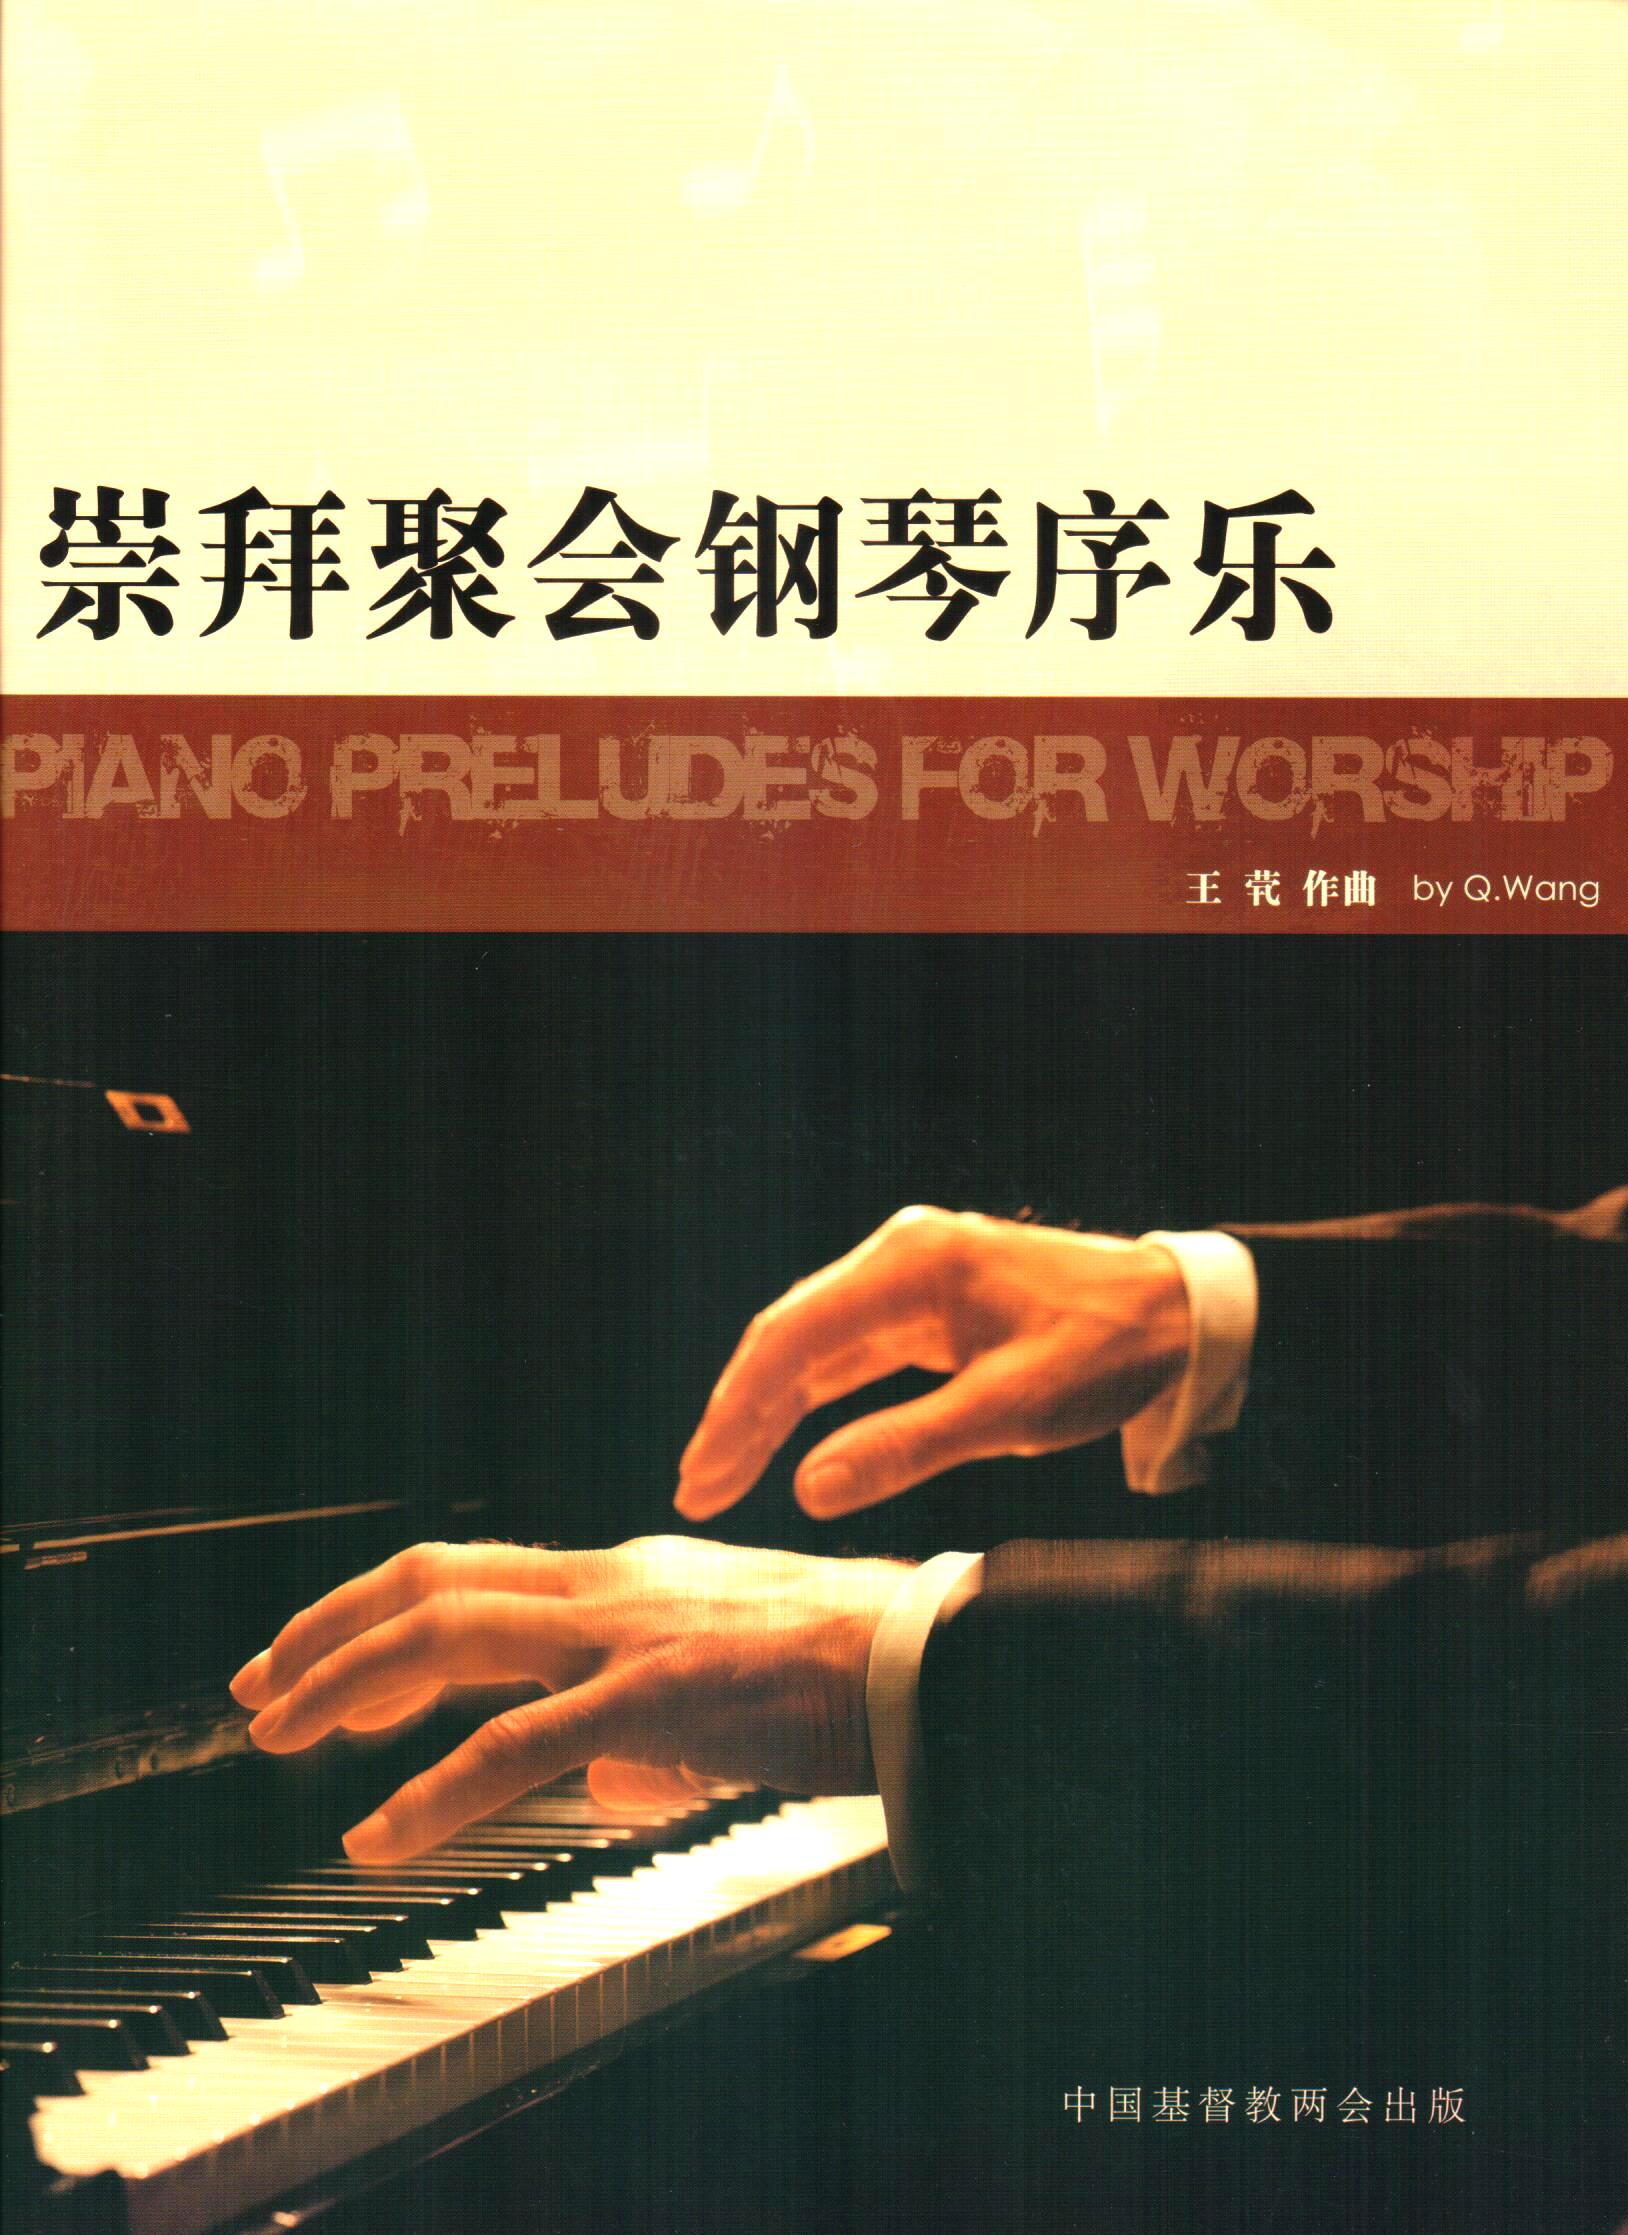 Cover of 崇拜聚會鋼琴序樂